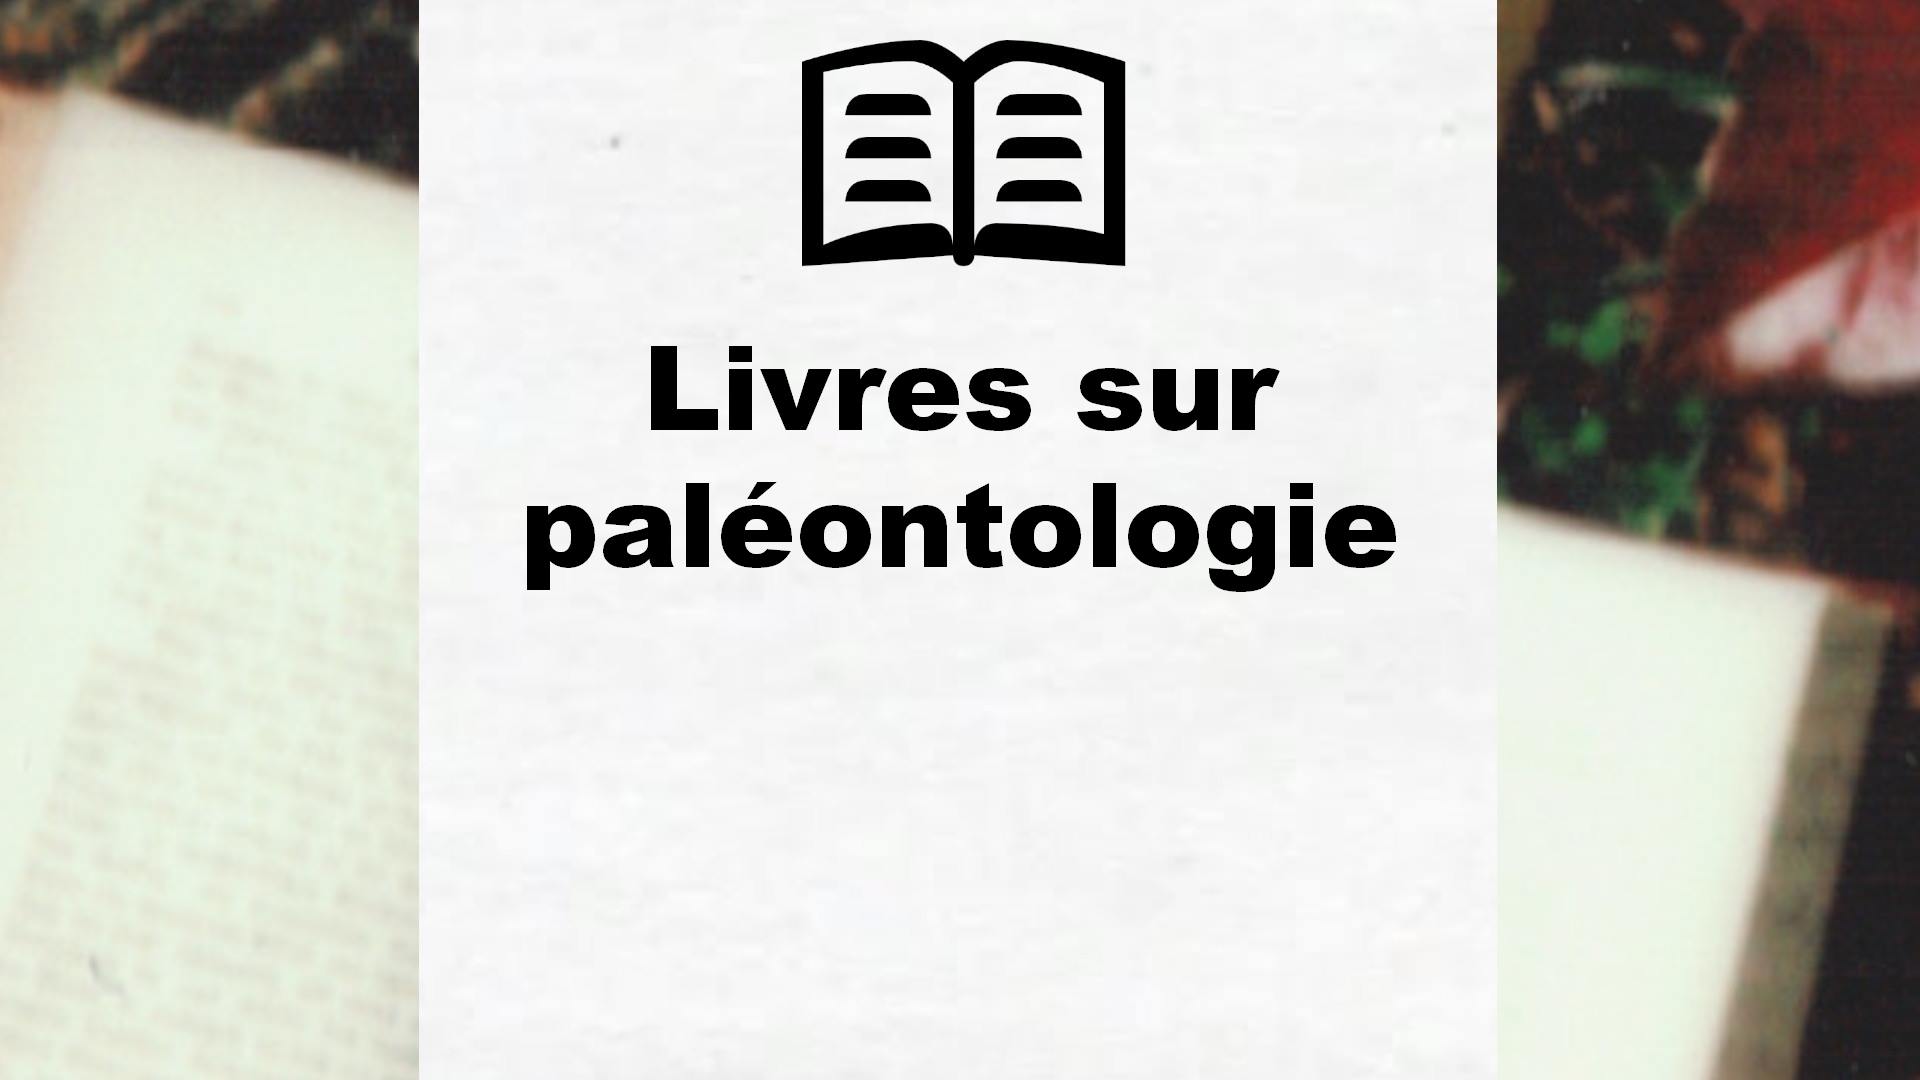 Livres sur paléontologie